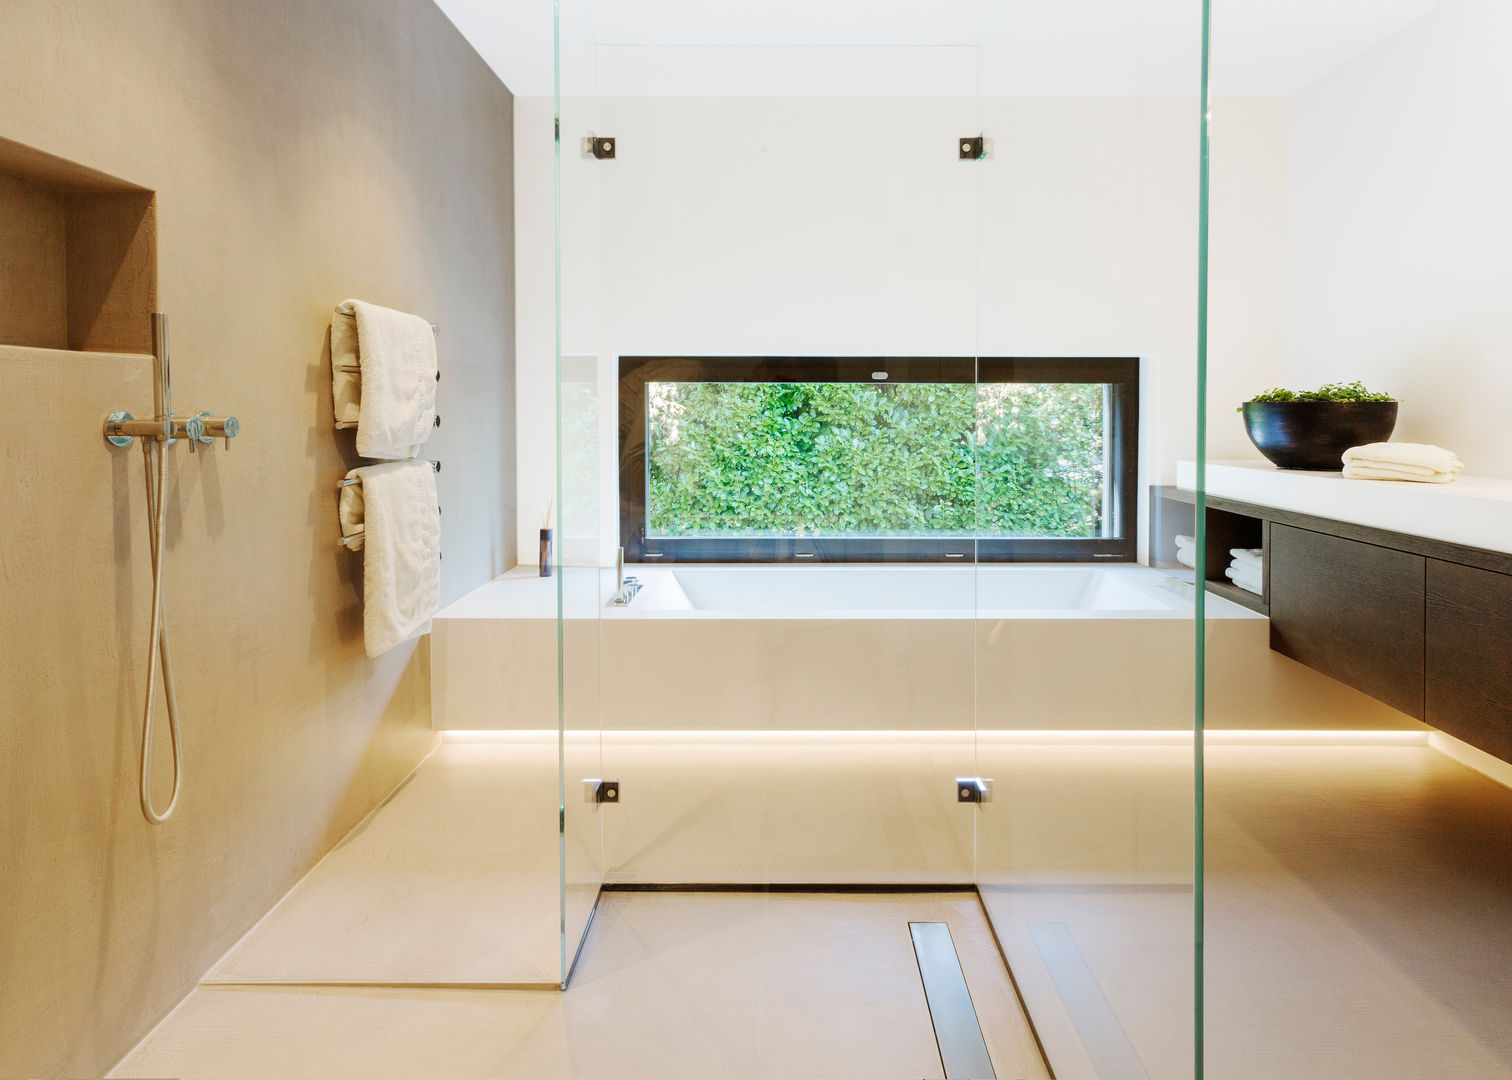 Objekt 336: Traumhaftes Einfamilienhaus mit Panoramablick , meier architekten zürich meier architekten zürich Moderne badkamers